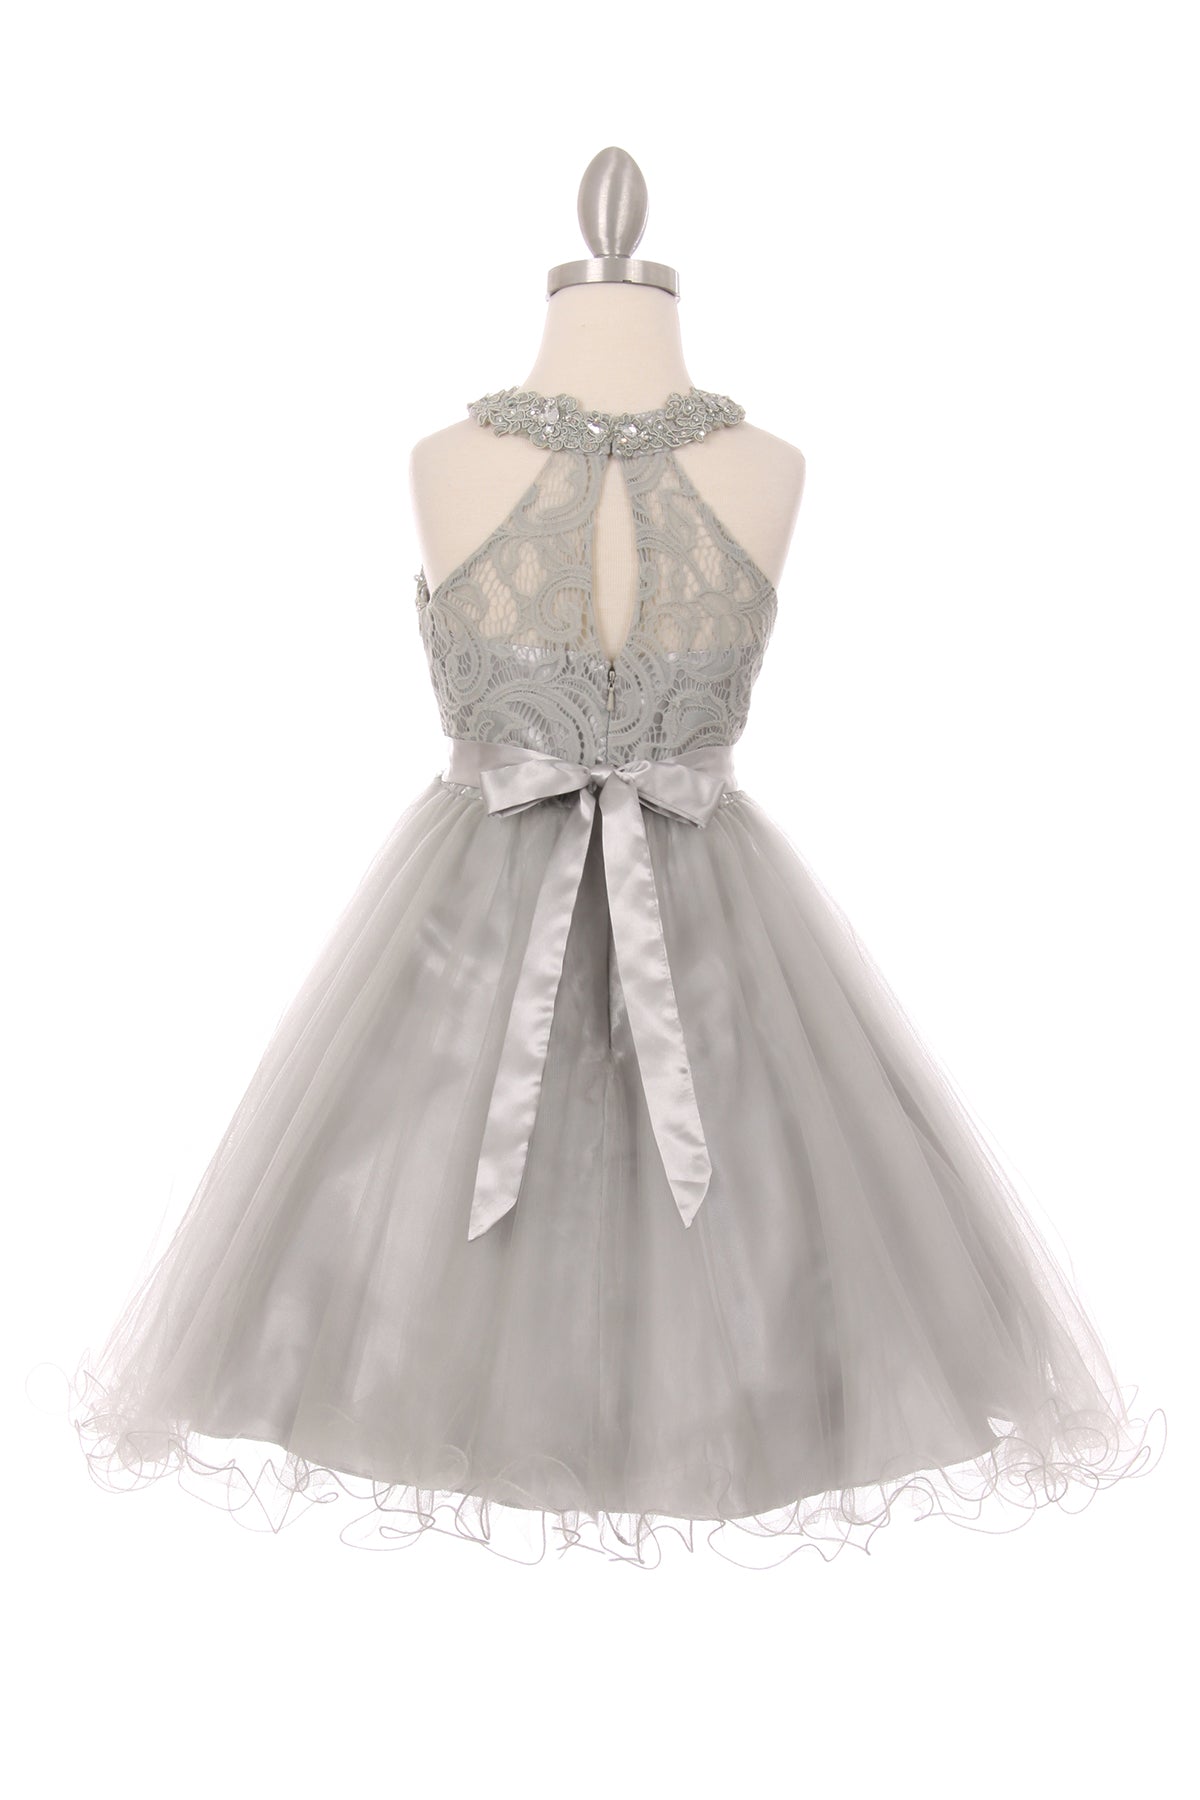 Silver Girl Dress,Girl Dress,Grey Dress, Silver Dress, Flower Girl, Wedding Flower Girl Dress, Silver Teen Dress